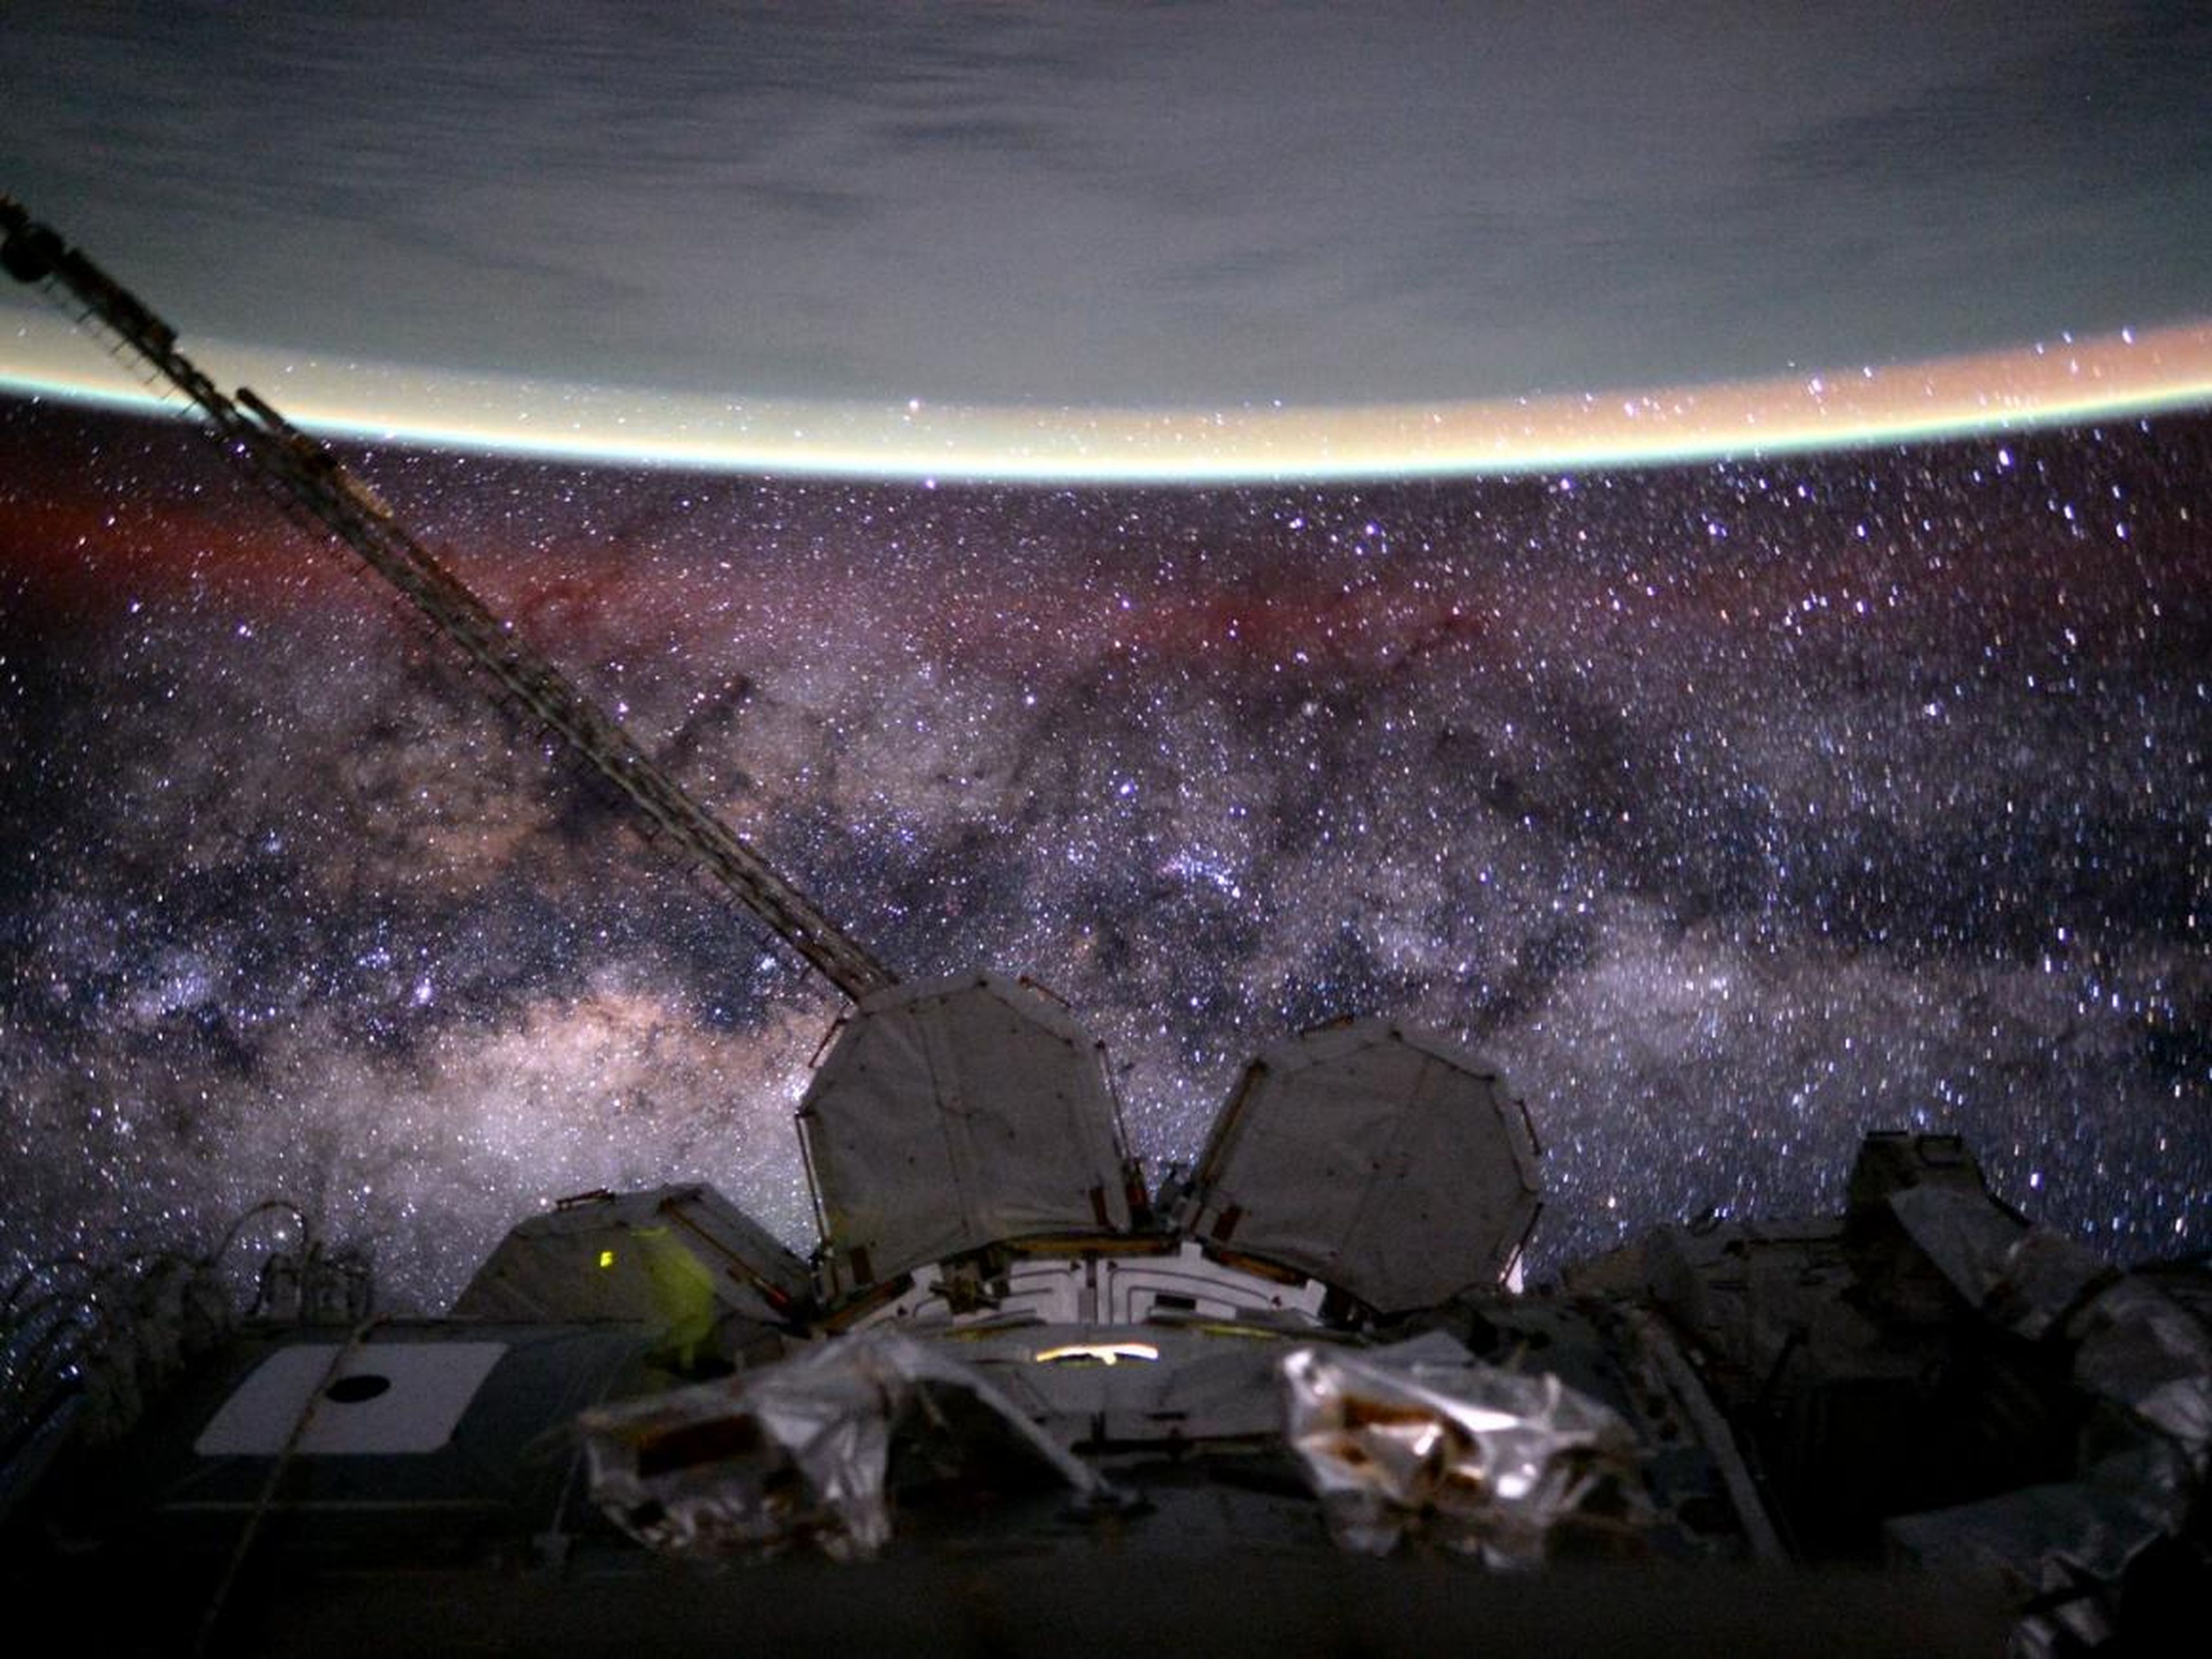 El astronauta Scott Kelly publicó esta foto en Twitter con el título: "Día 135. #ViaLactea. Eres vieja, polvorienta, gaseosa y deformada. Pero hermosa. ¡Buenas noches desde @space_station! #UnAñoEnElEspacio". 9 de agosto de 2015.